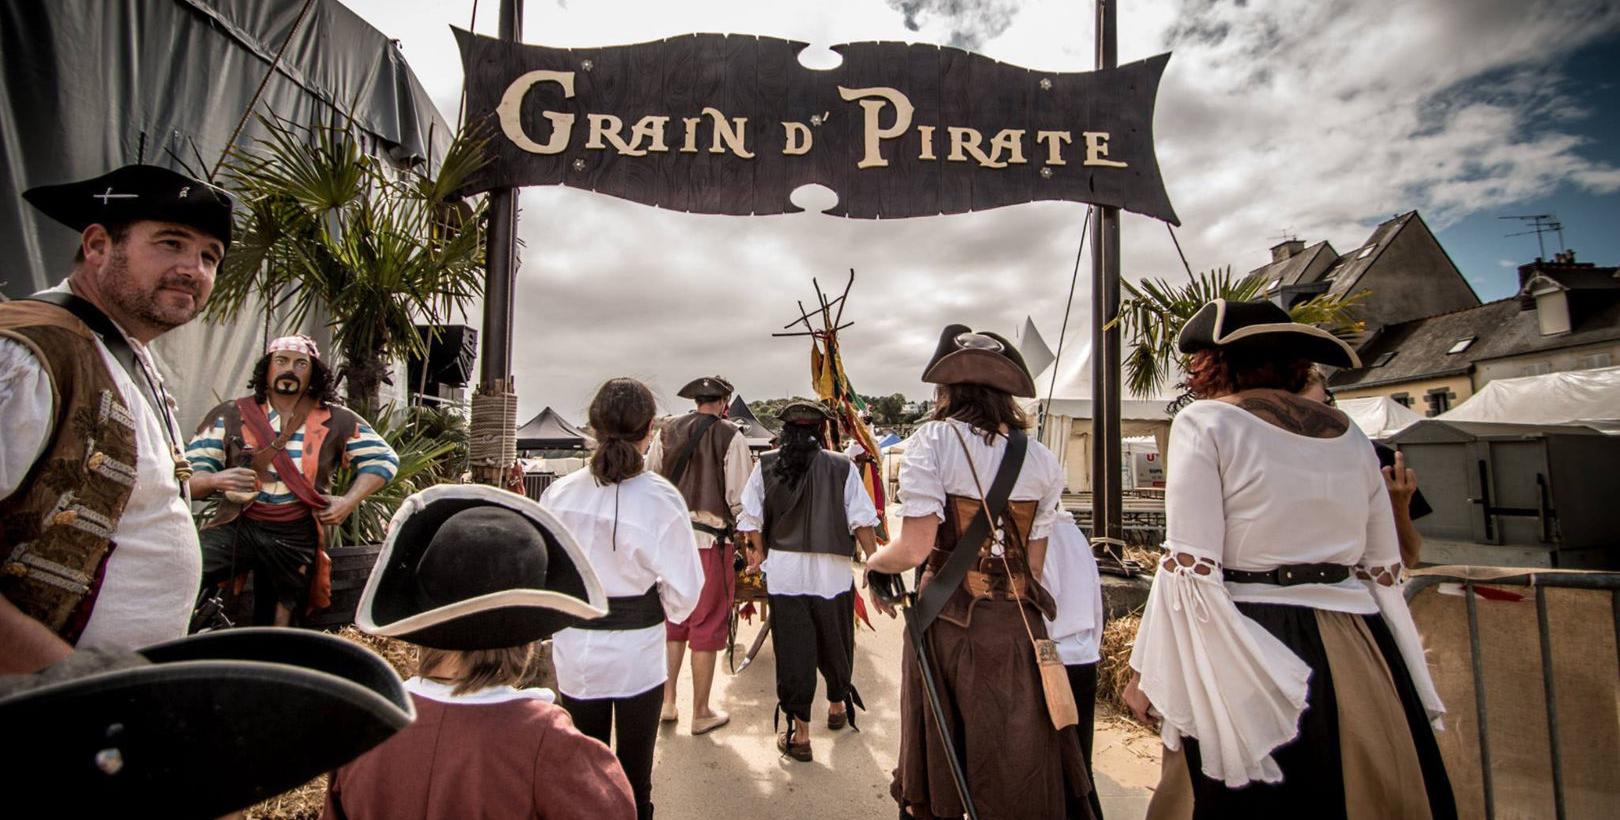 "Grain d'pirate", festival près de Saint-Brieuc